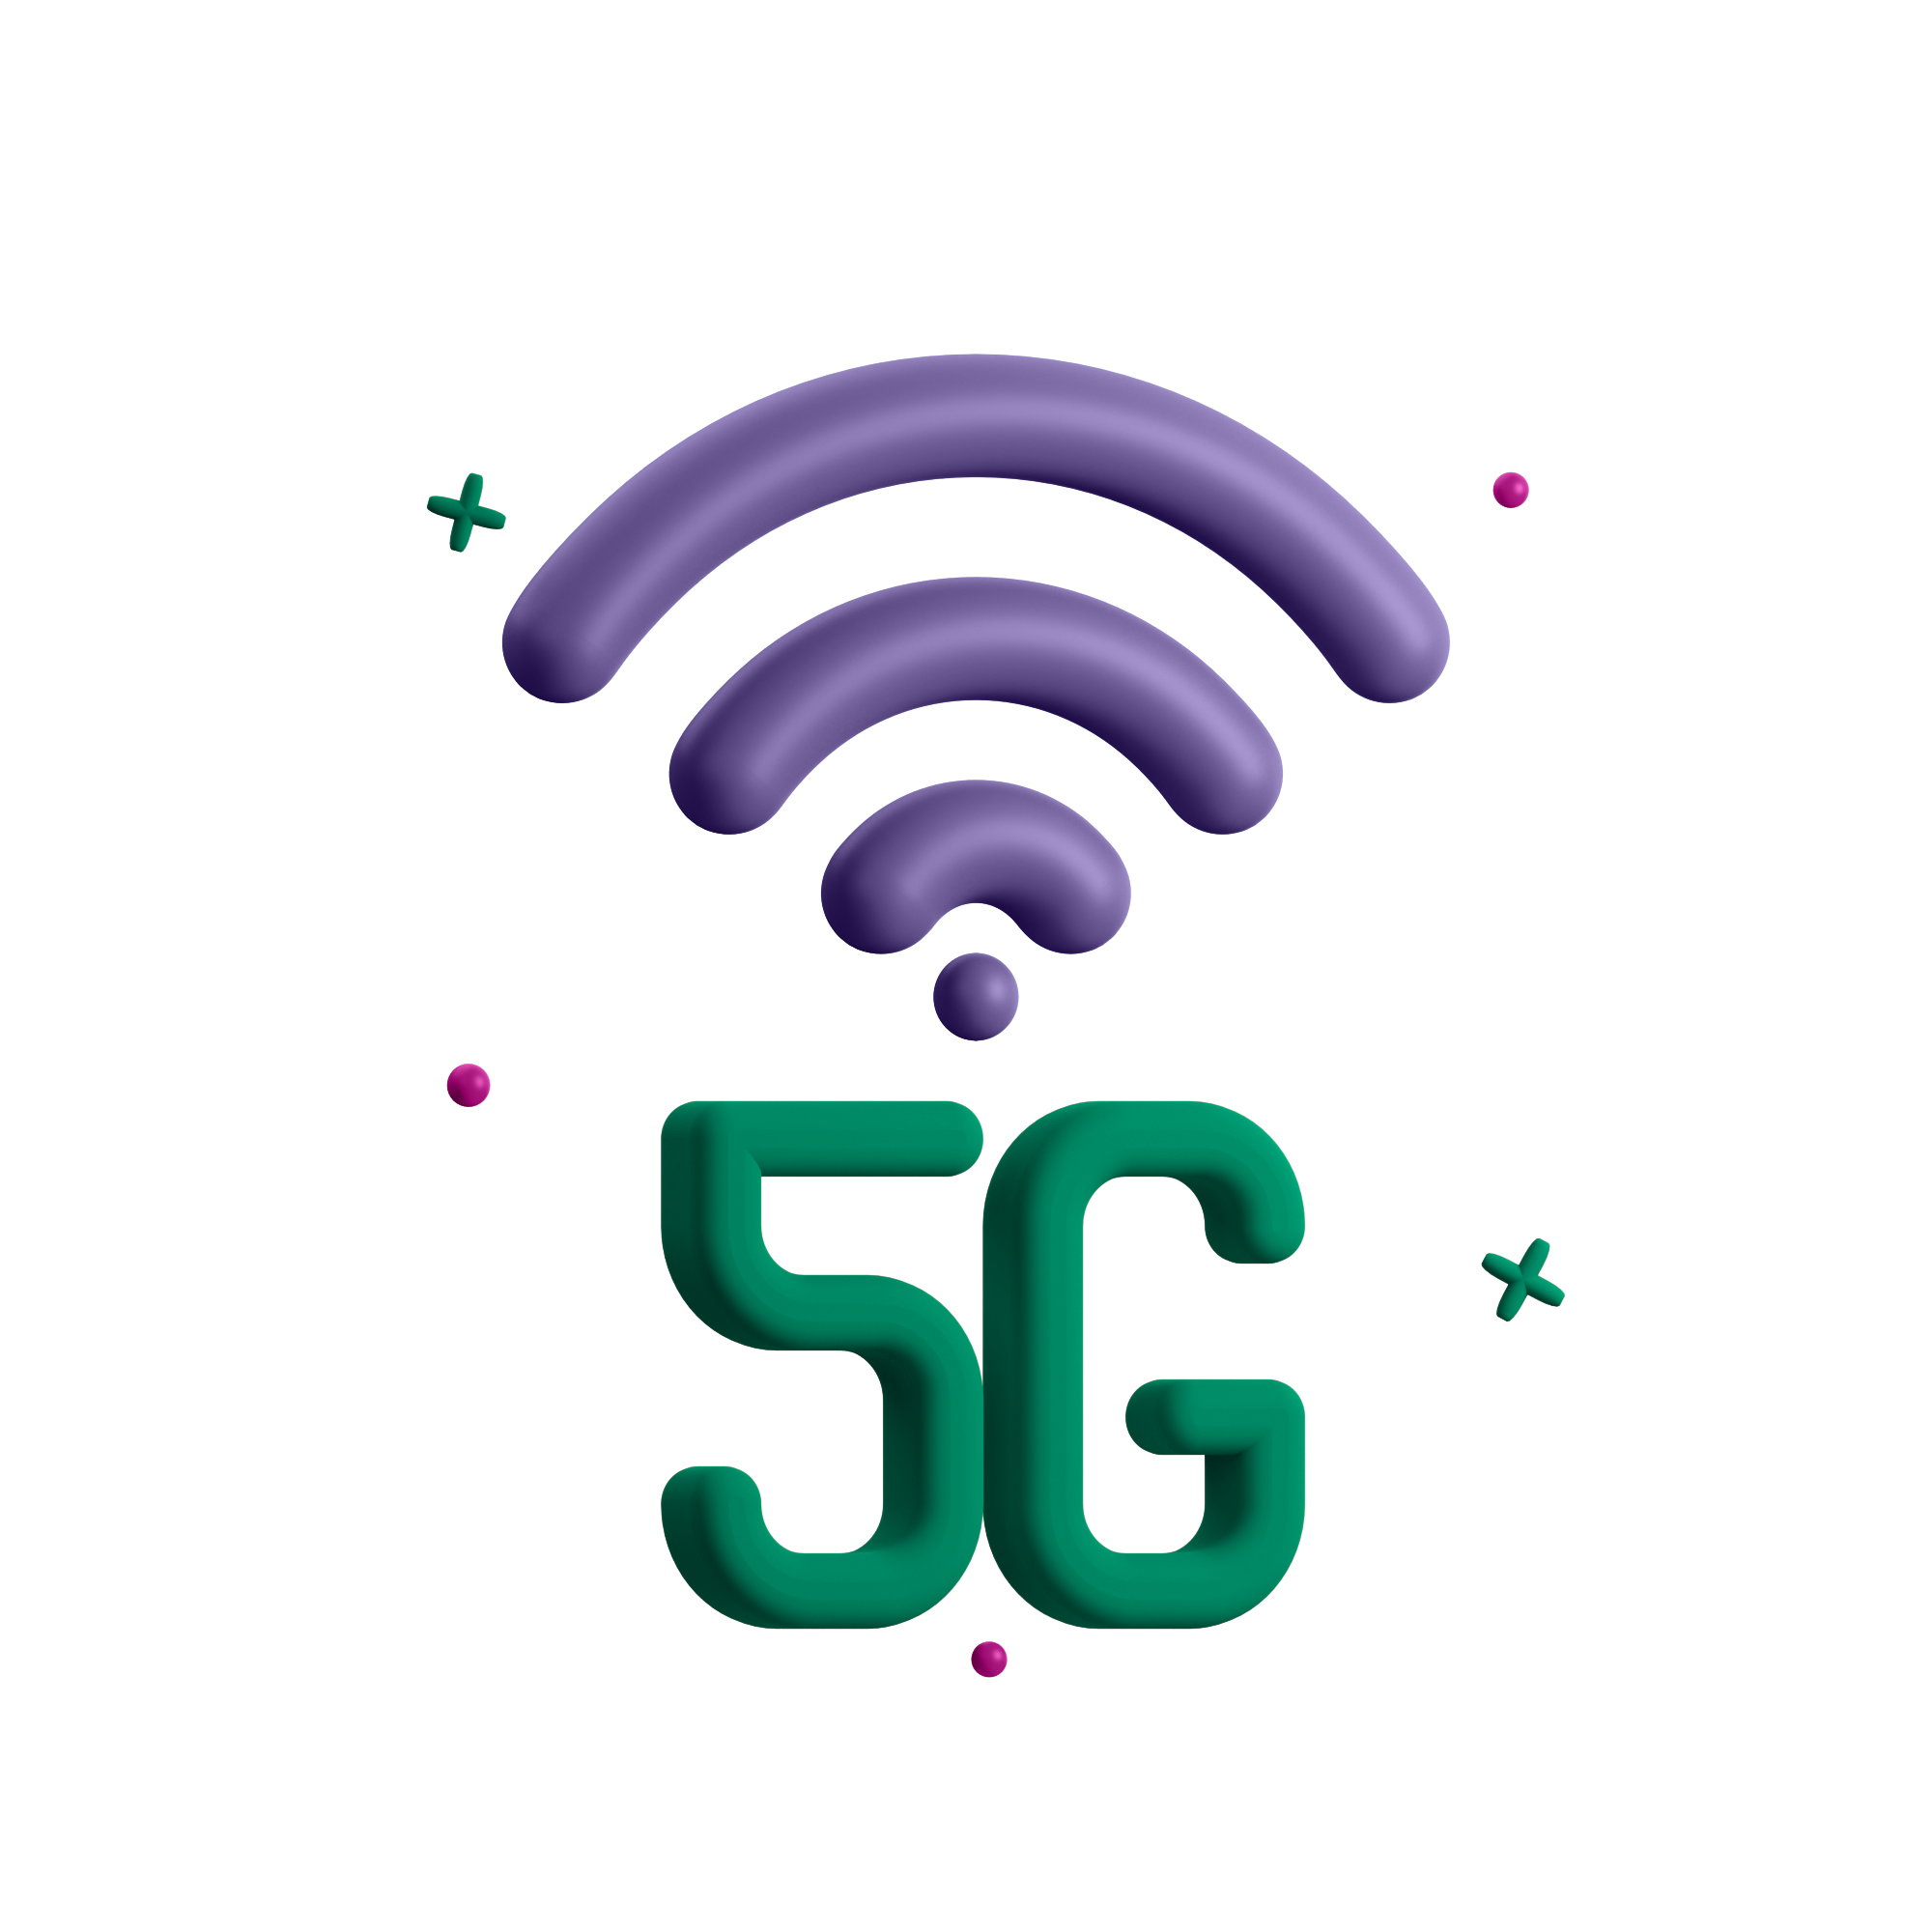 5G Broadband